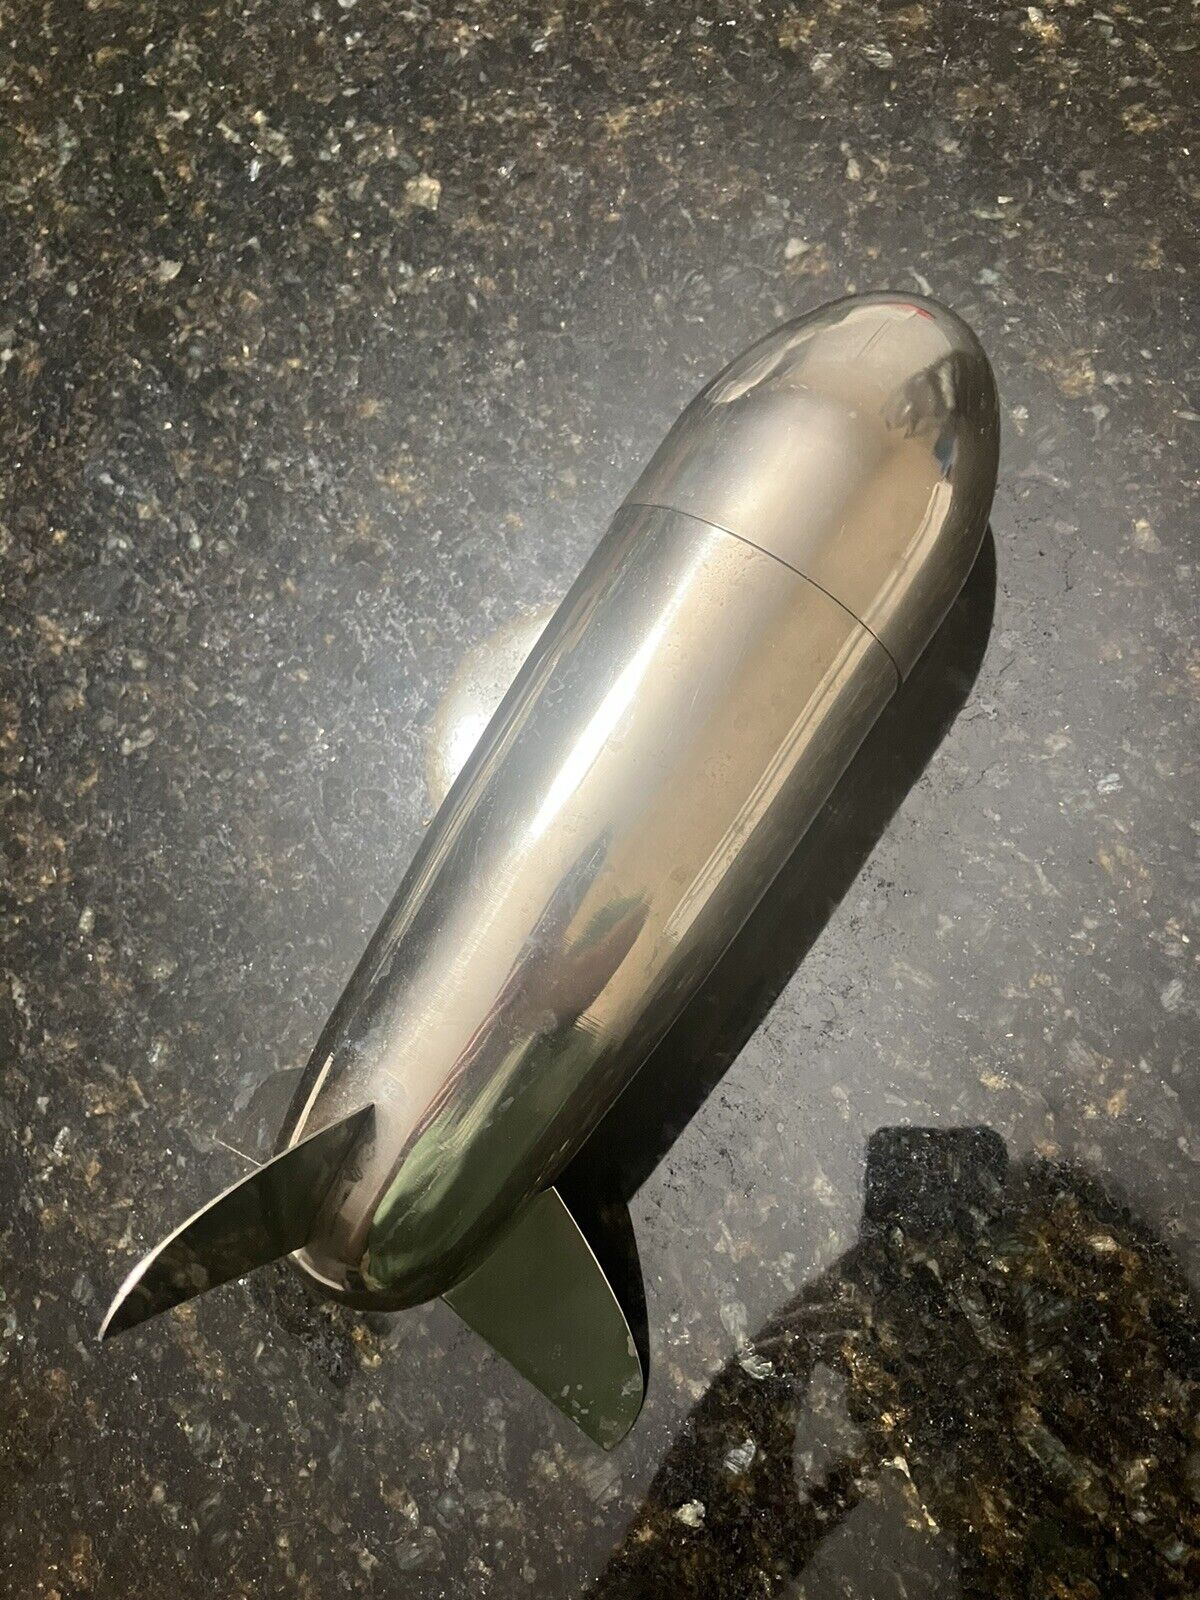 Art Deco Blimp Zeppelin Cocktail Shaker UNMARKED (Has Wear)